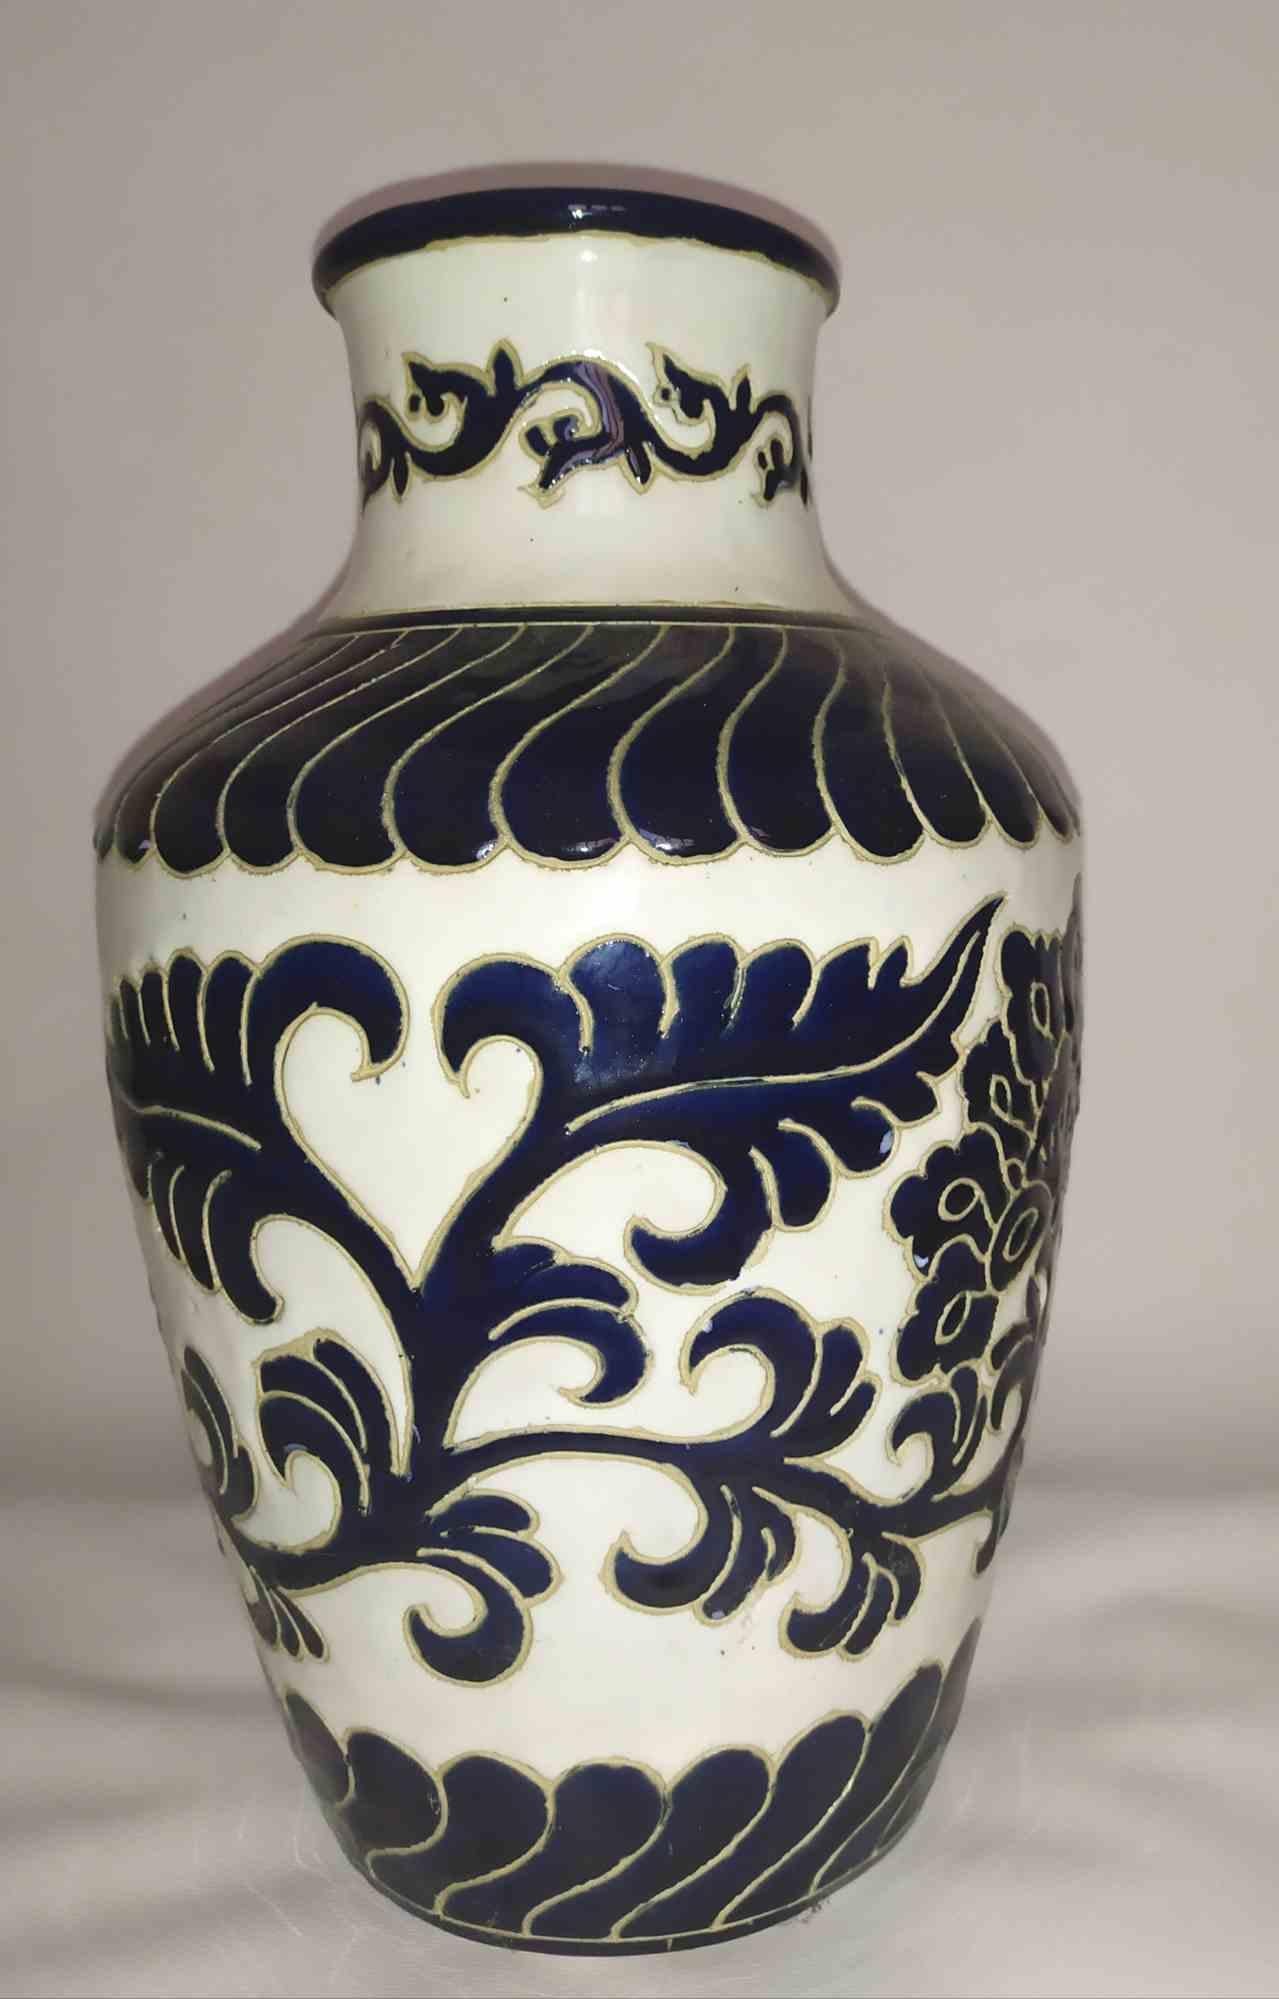 Schöne Vase, die in Capodimonte (Neapel) in den 1960er Jahren hergestellt wurde.

Handgefertigt und bemalt.

Sehr kleiner Chip auf der Oberseite des Halses.

